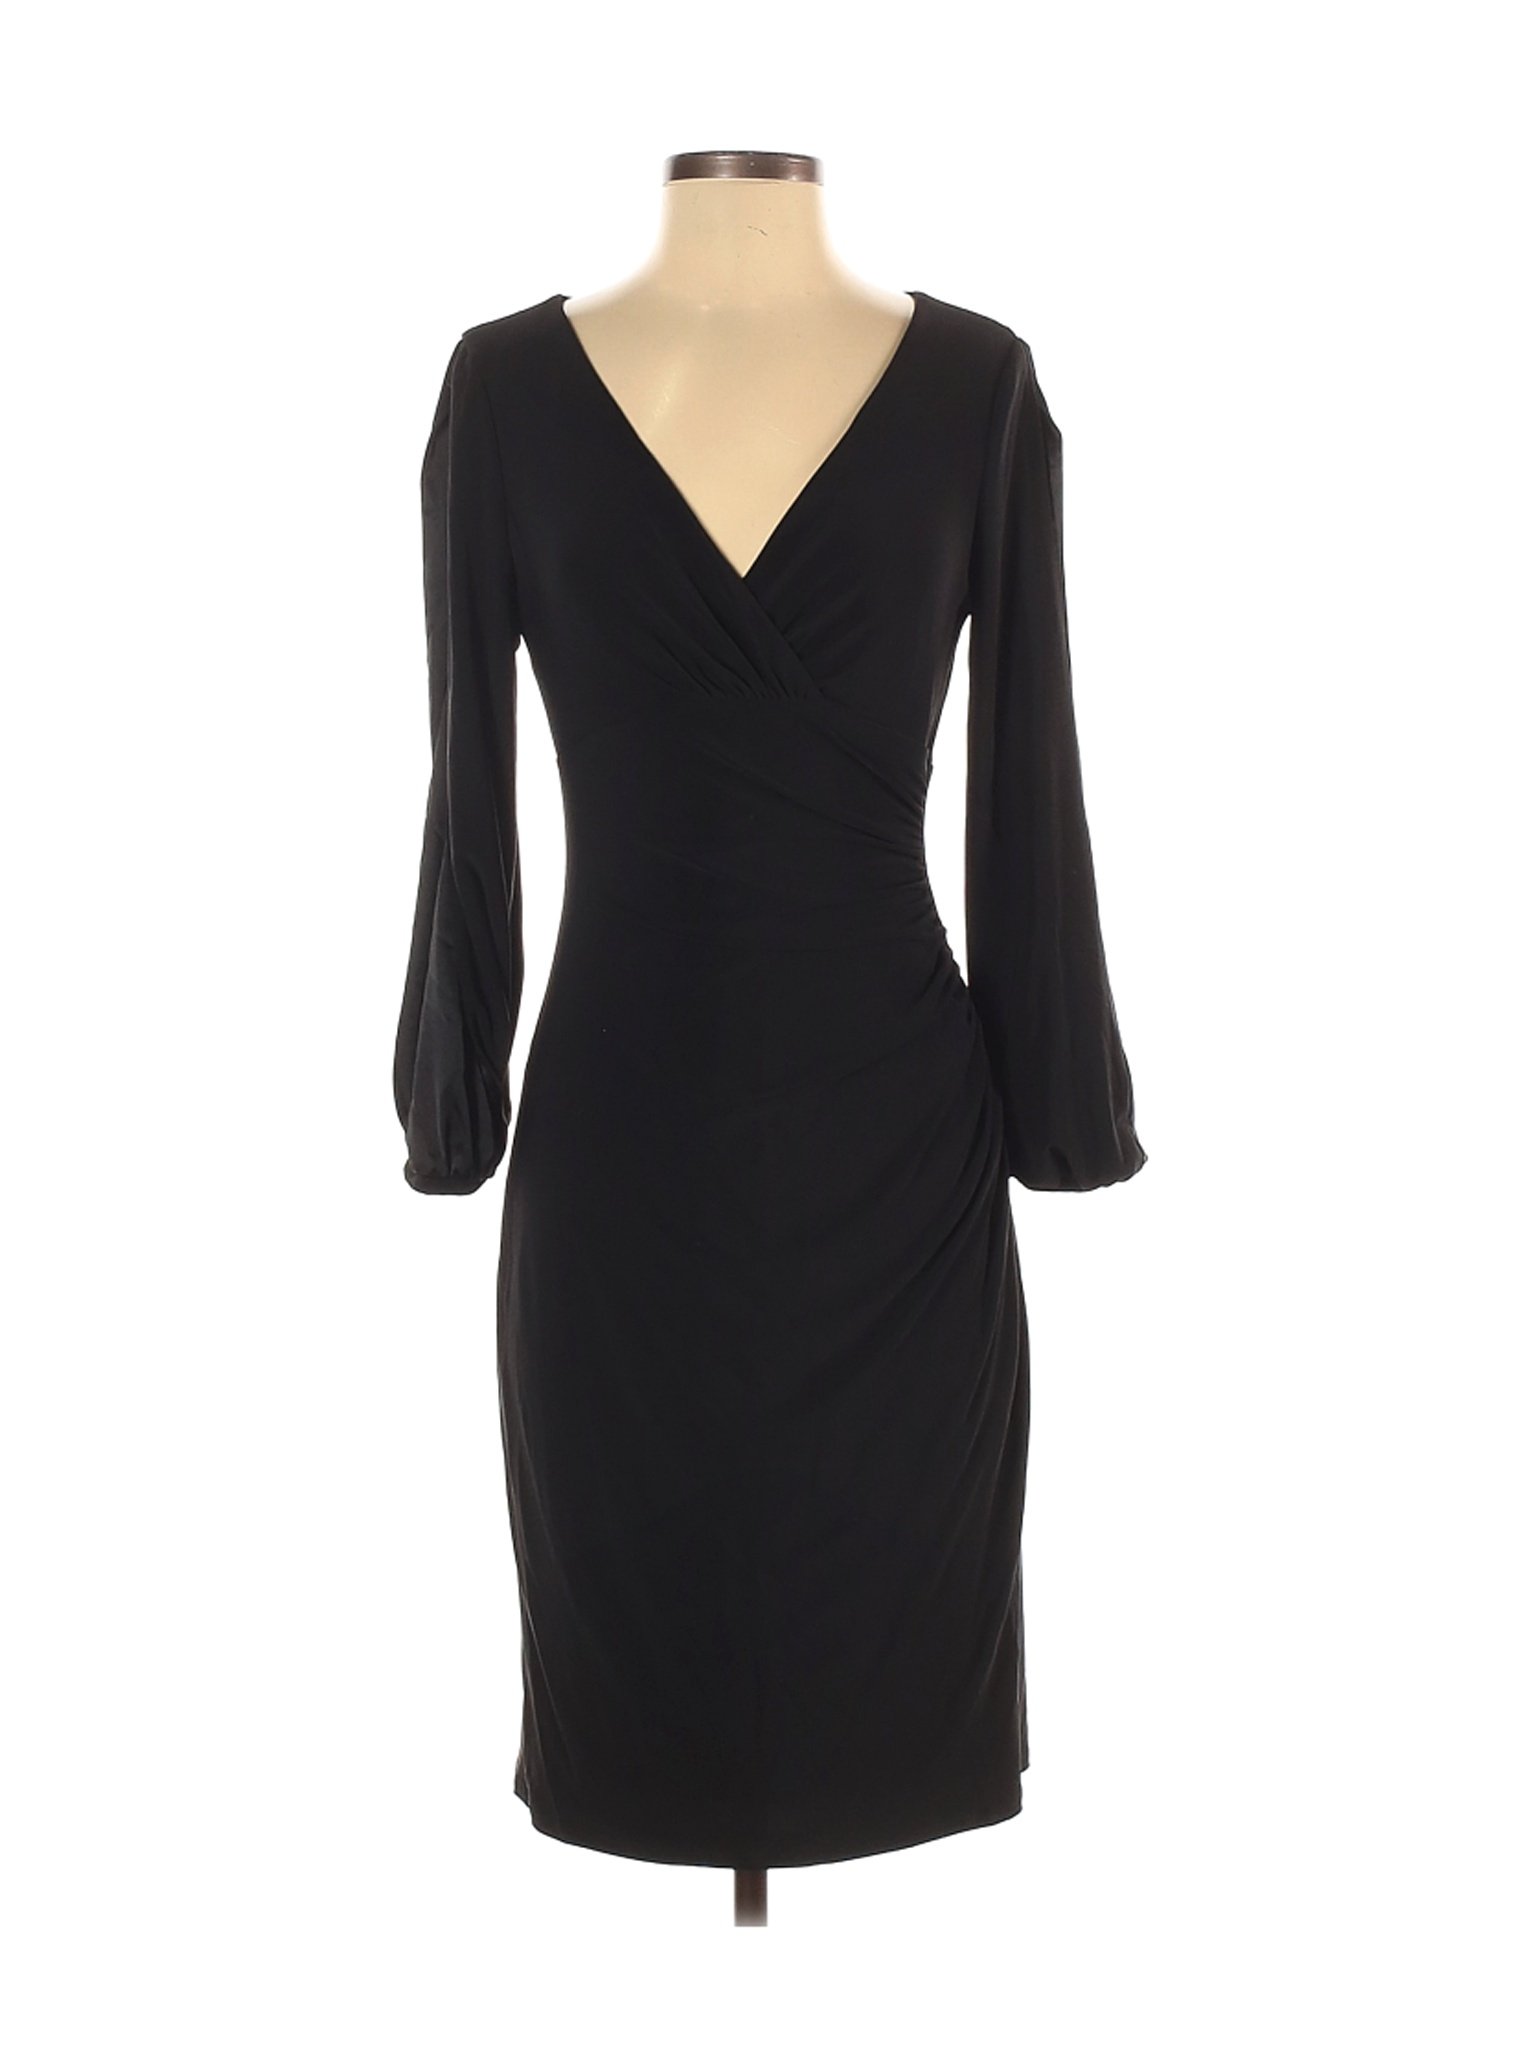 Lauren by Ralph Lauren Women Black Casual Dress 4 | eBay